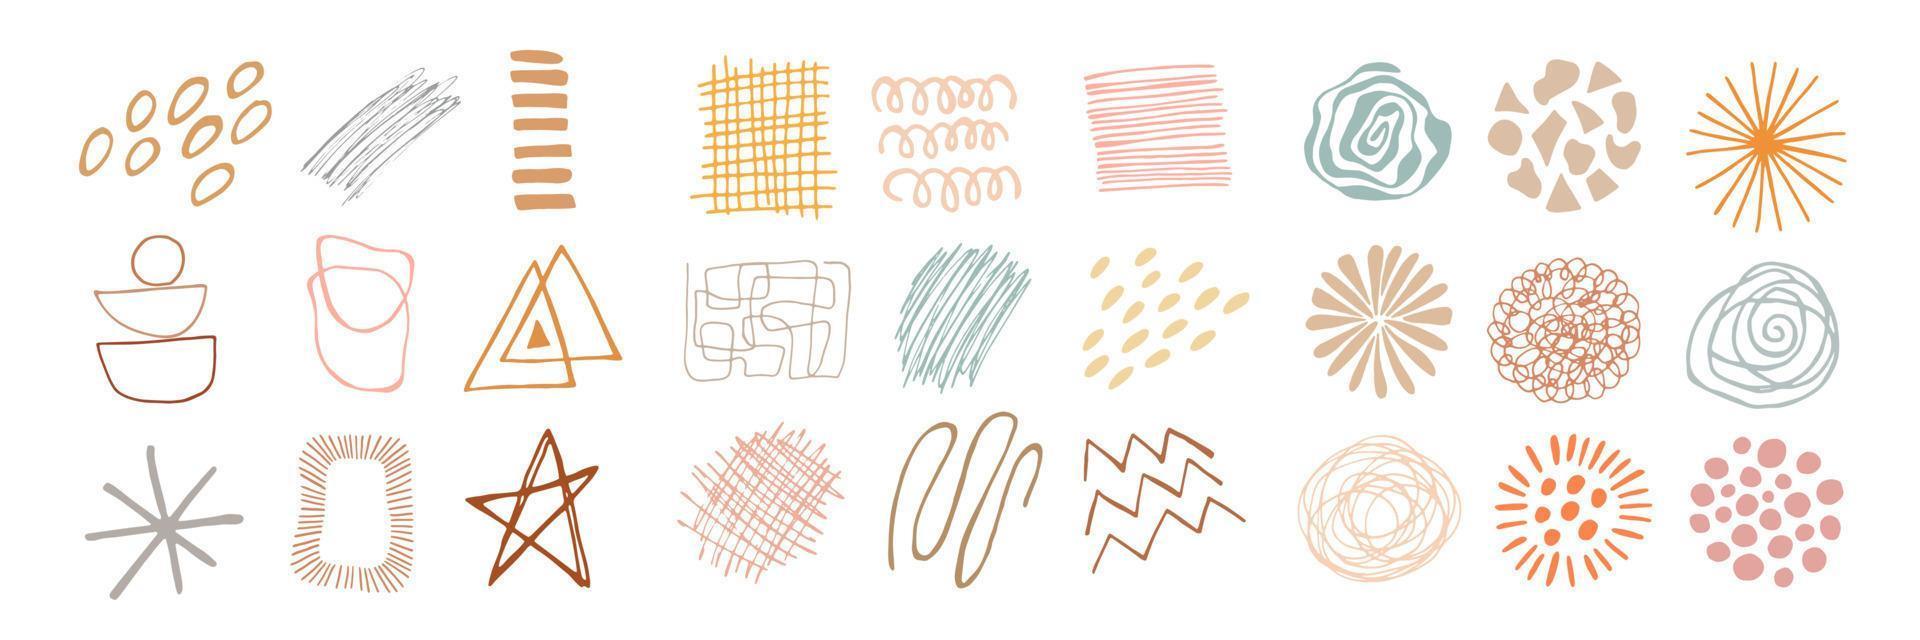 samling av moderna abstrakta former för design och inredning. enkel vektor doodle handritad illustration